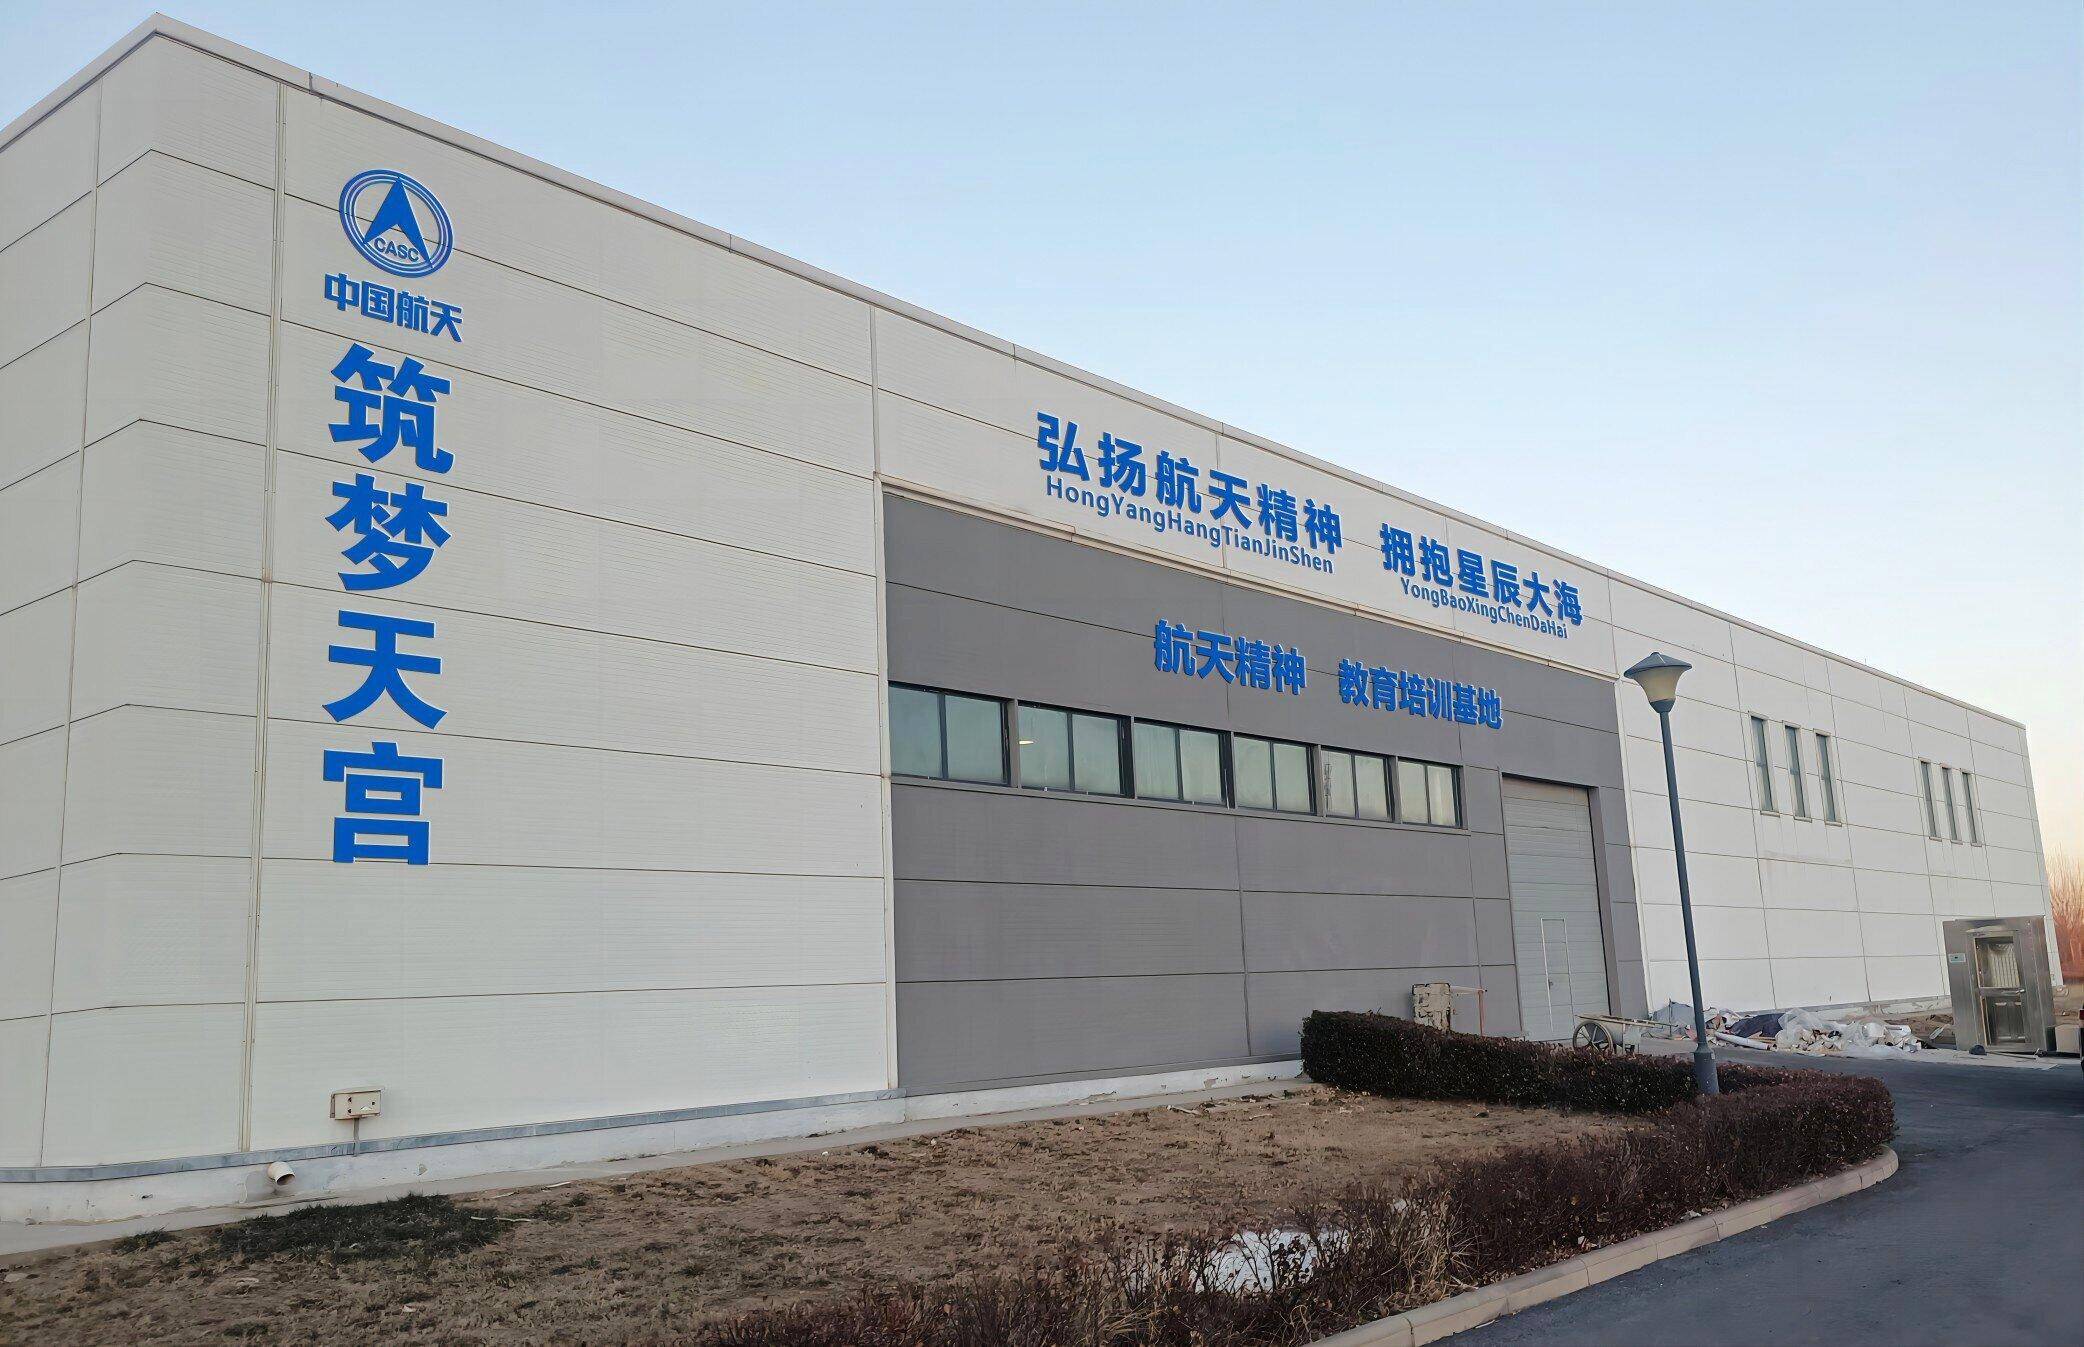 中国航天五院天津基地即中国空间技术研究院天津基地,于2008年12月